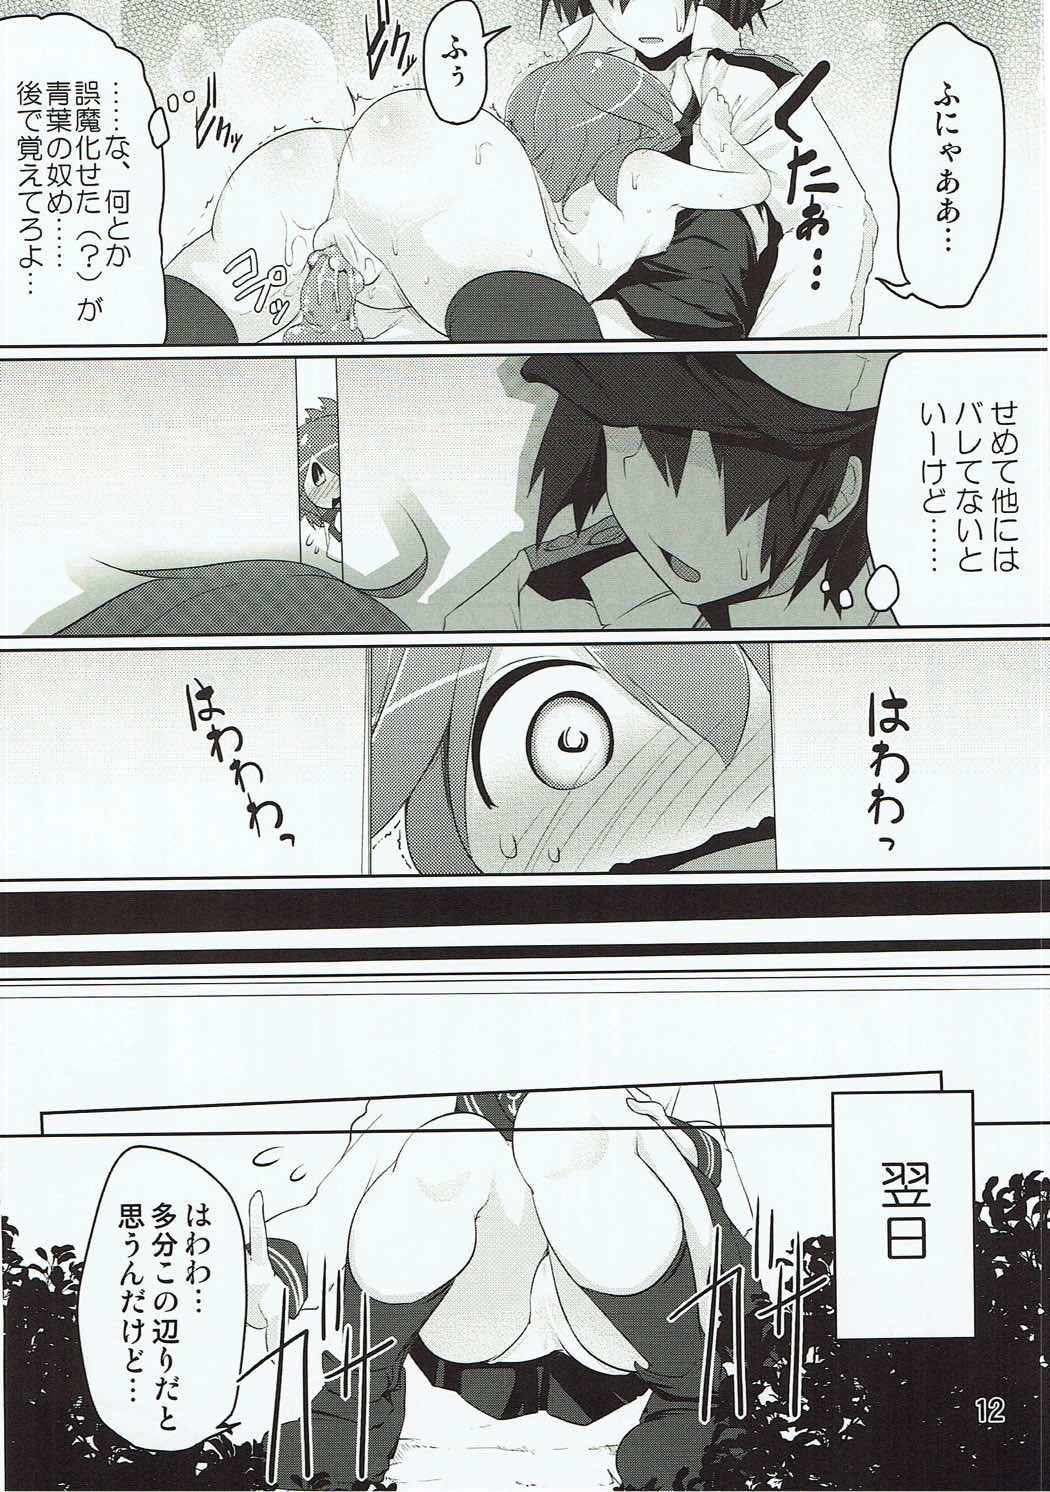 Her Shireikan-san! Watashi ga Iru no desu! - Kantai collection Spreading - Page 11